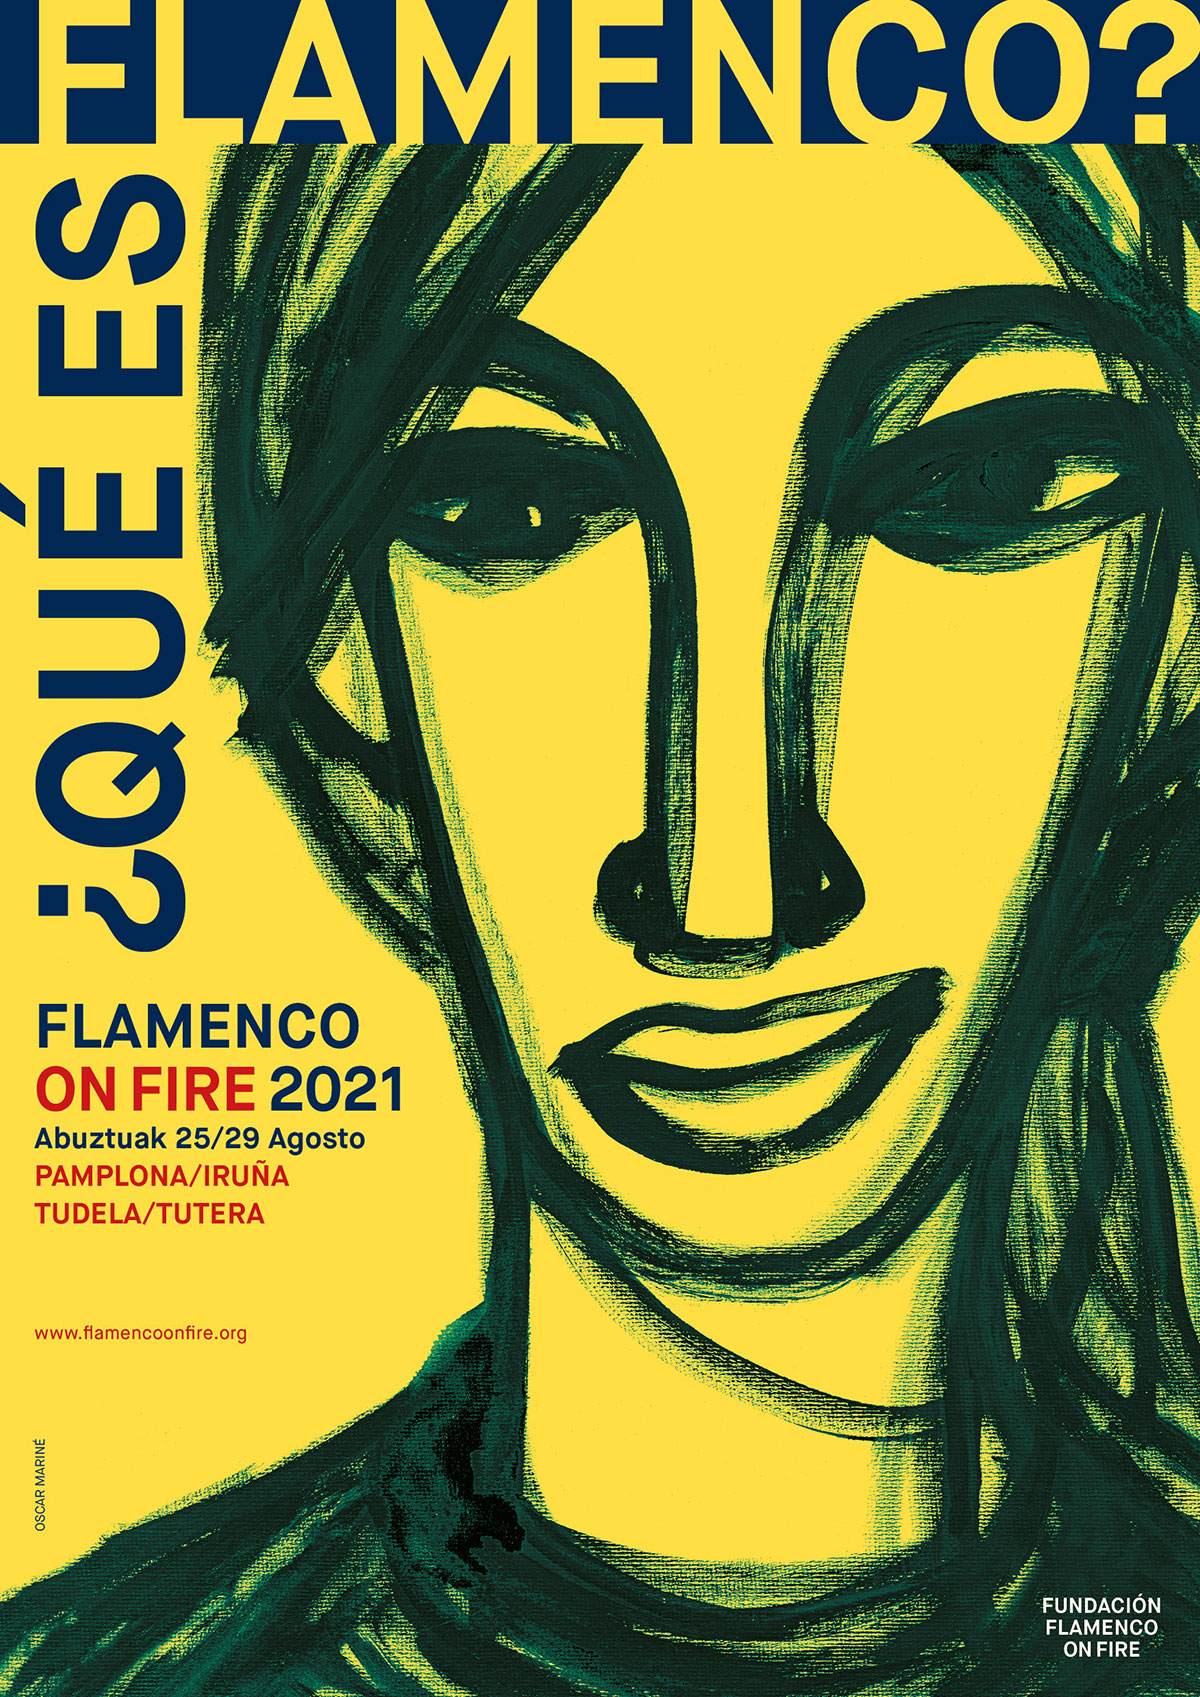 Flamenco on Fire